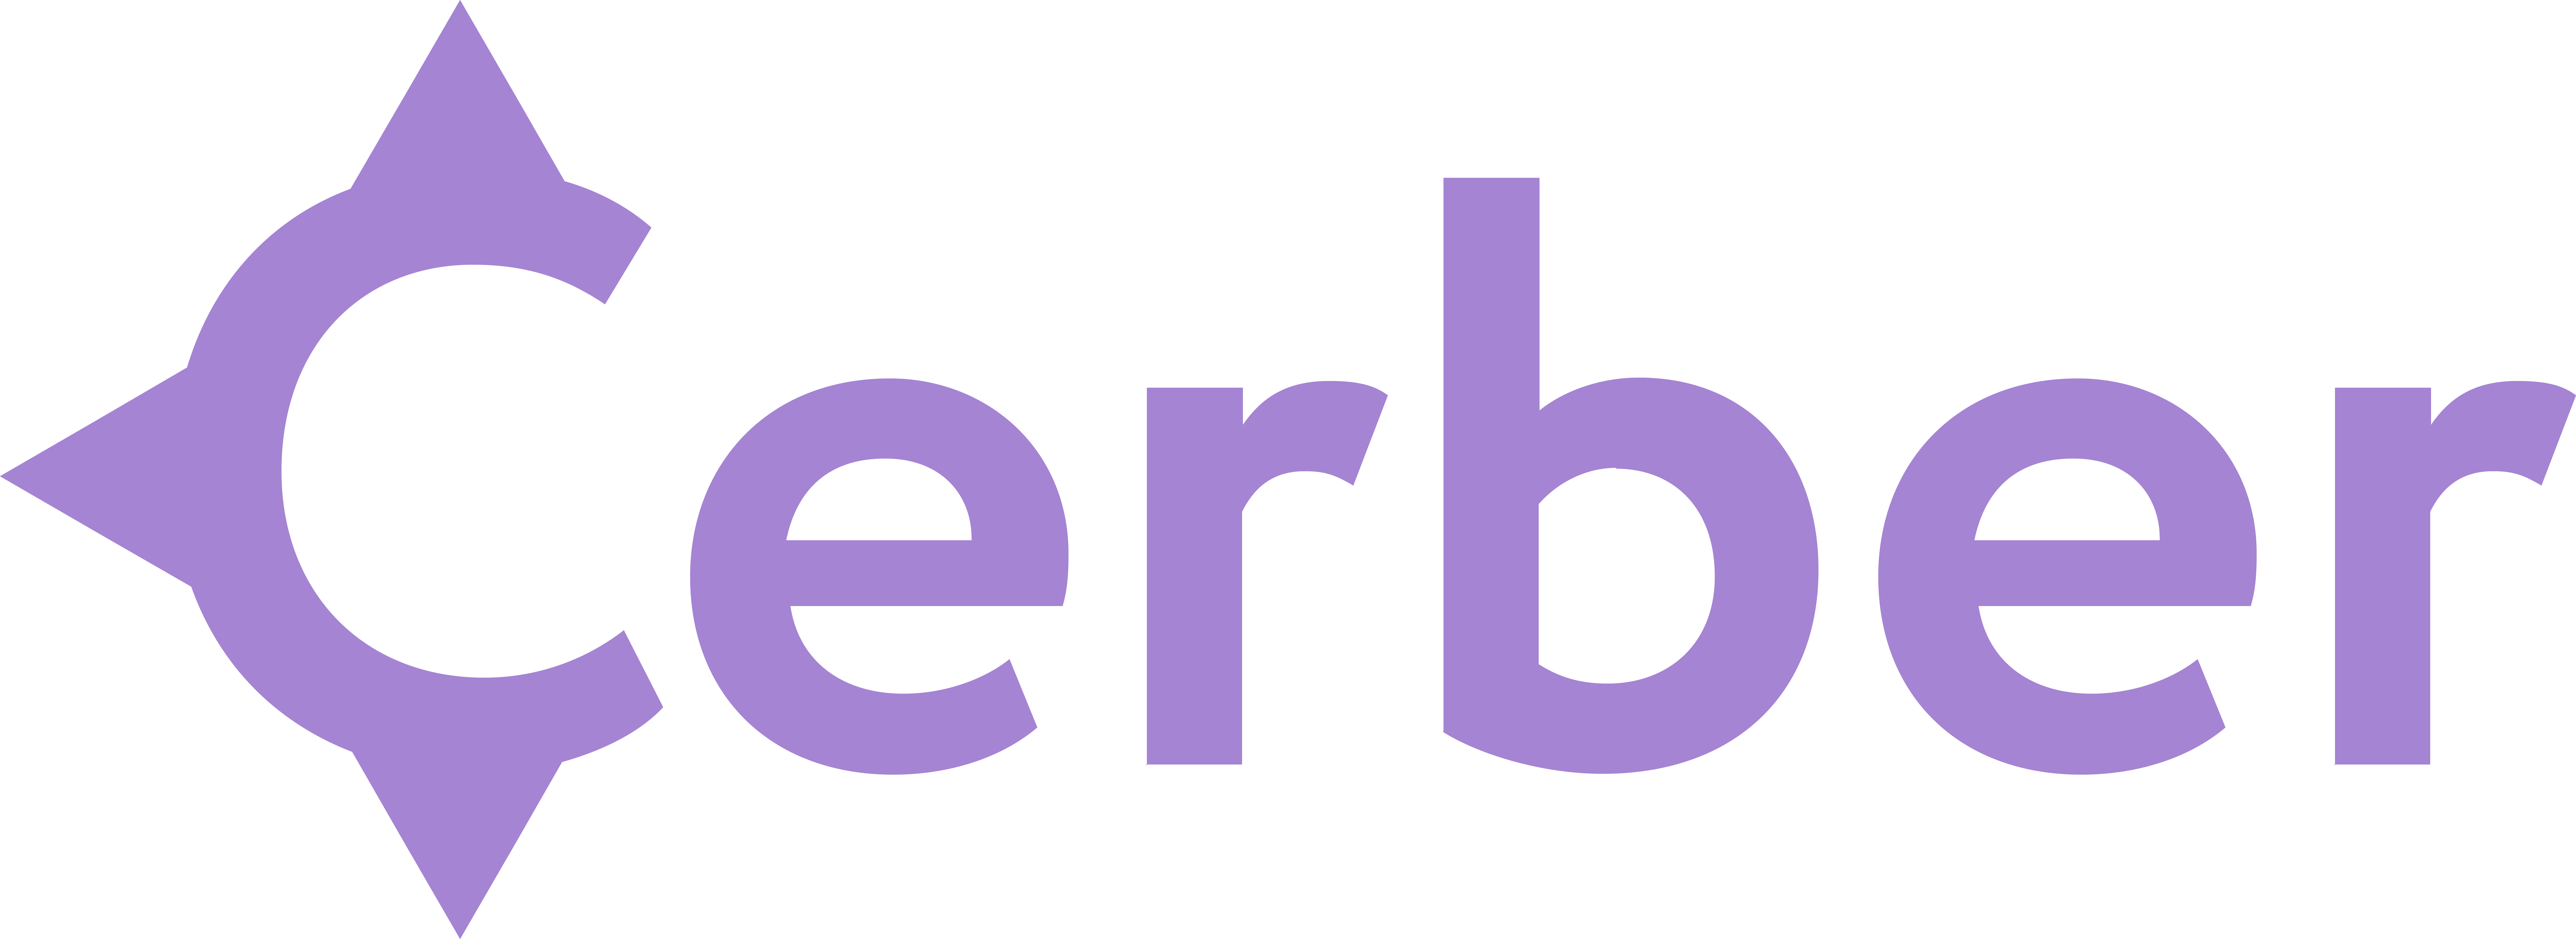 Cerber